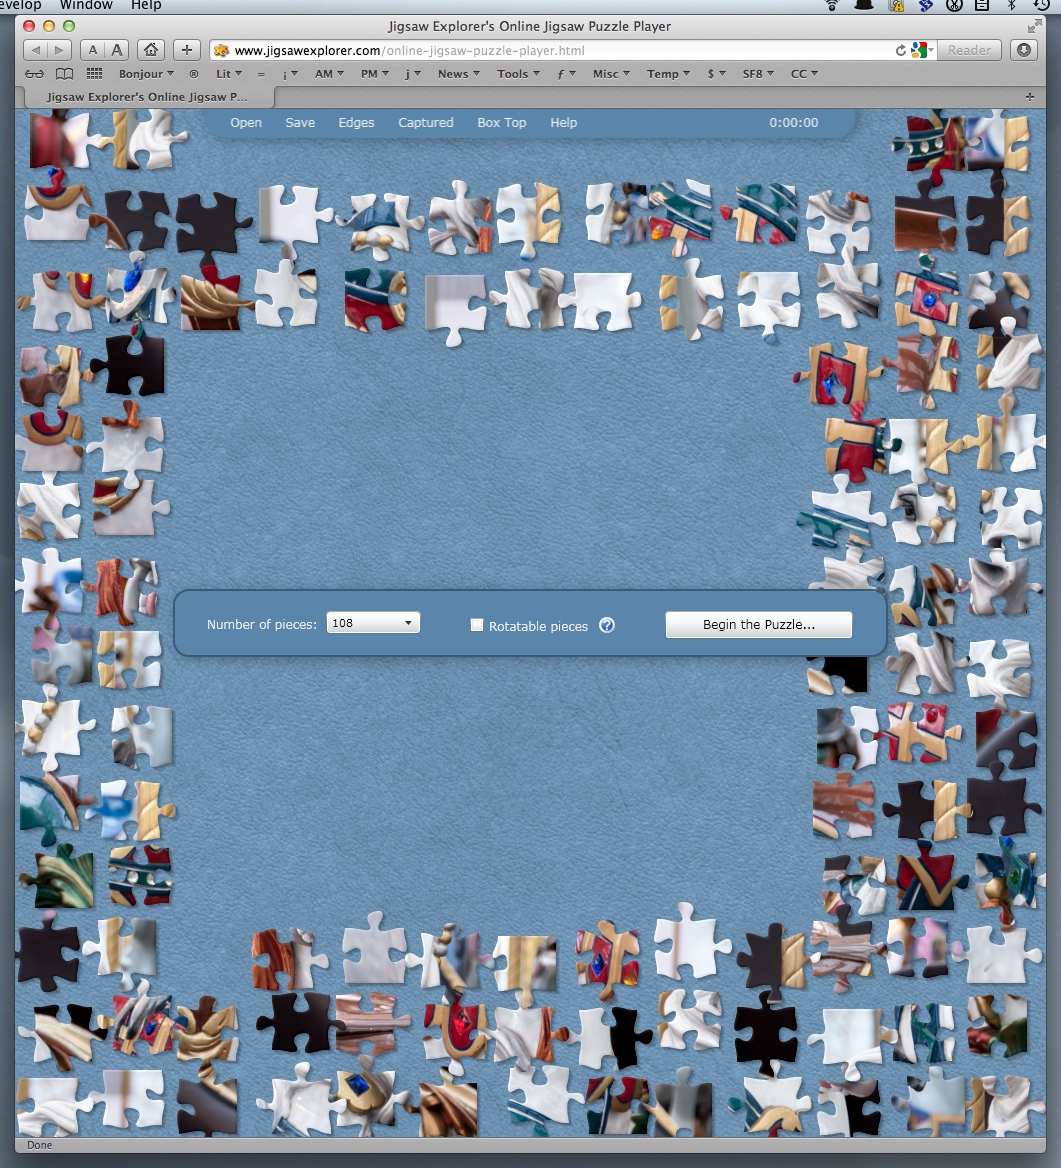 Jigsaw Explorer – Online Jigsaw Puzzles